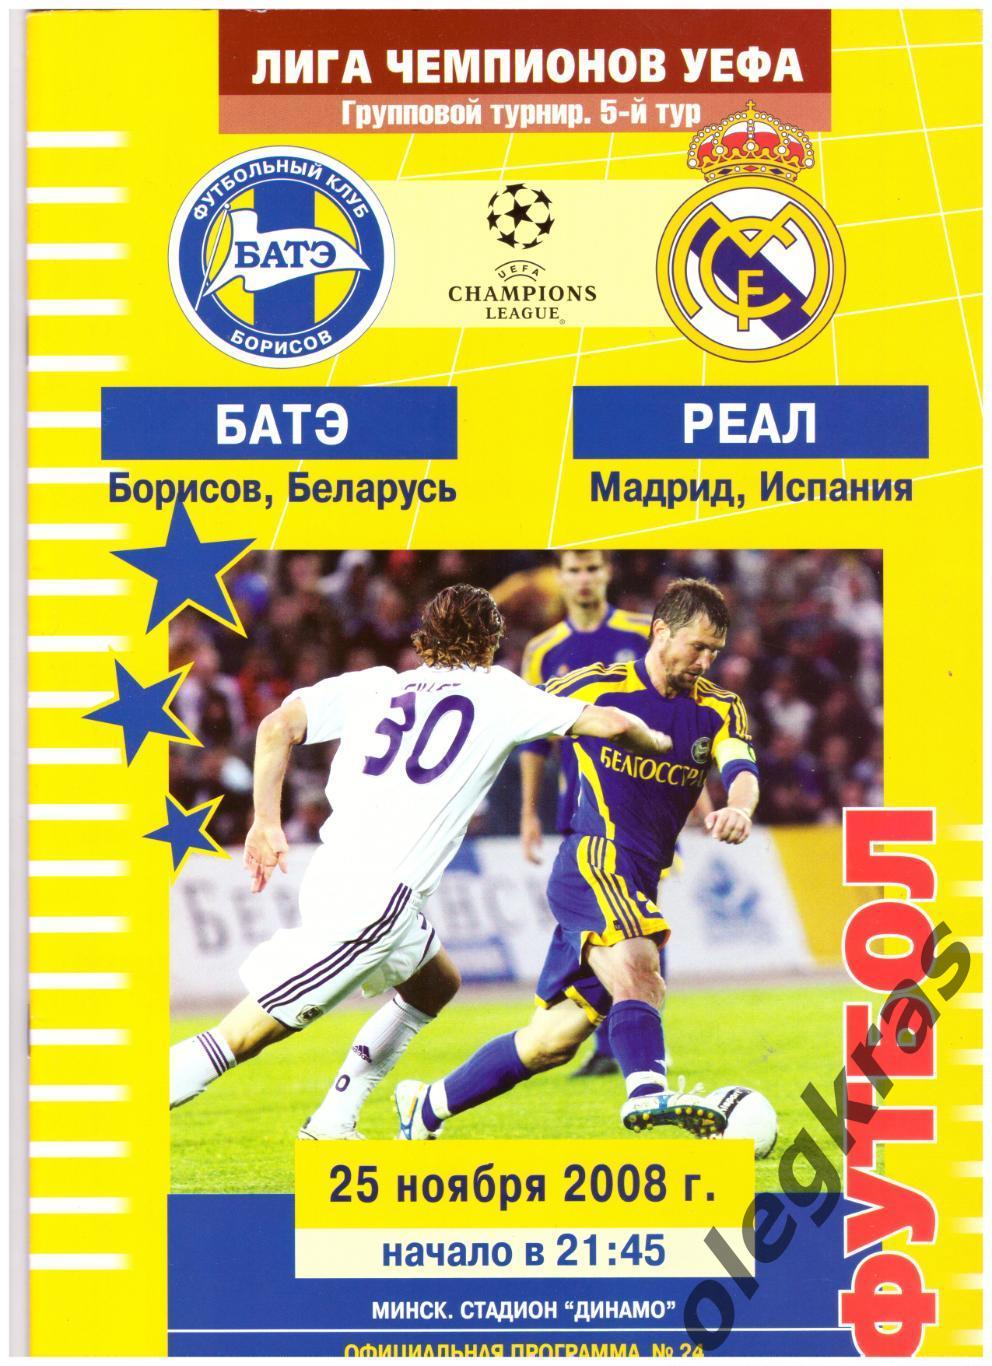 БАТЭ(Борисов, Беларусь) - Реал(Мадрид, Испания) - 25 ноября 2008 года.